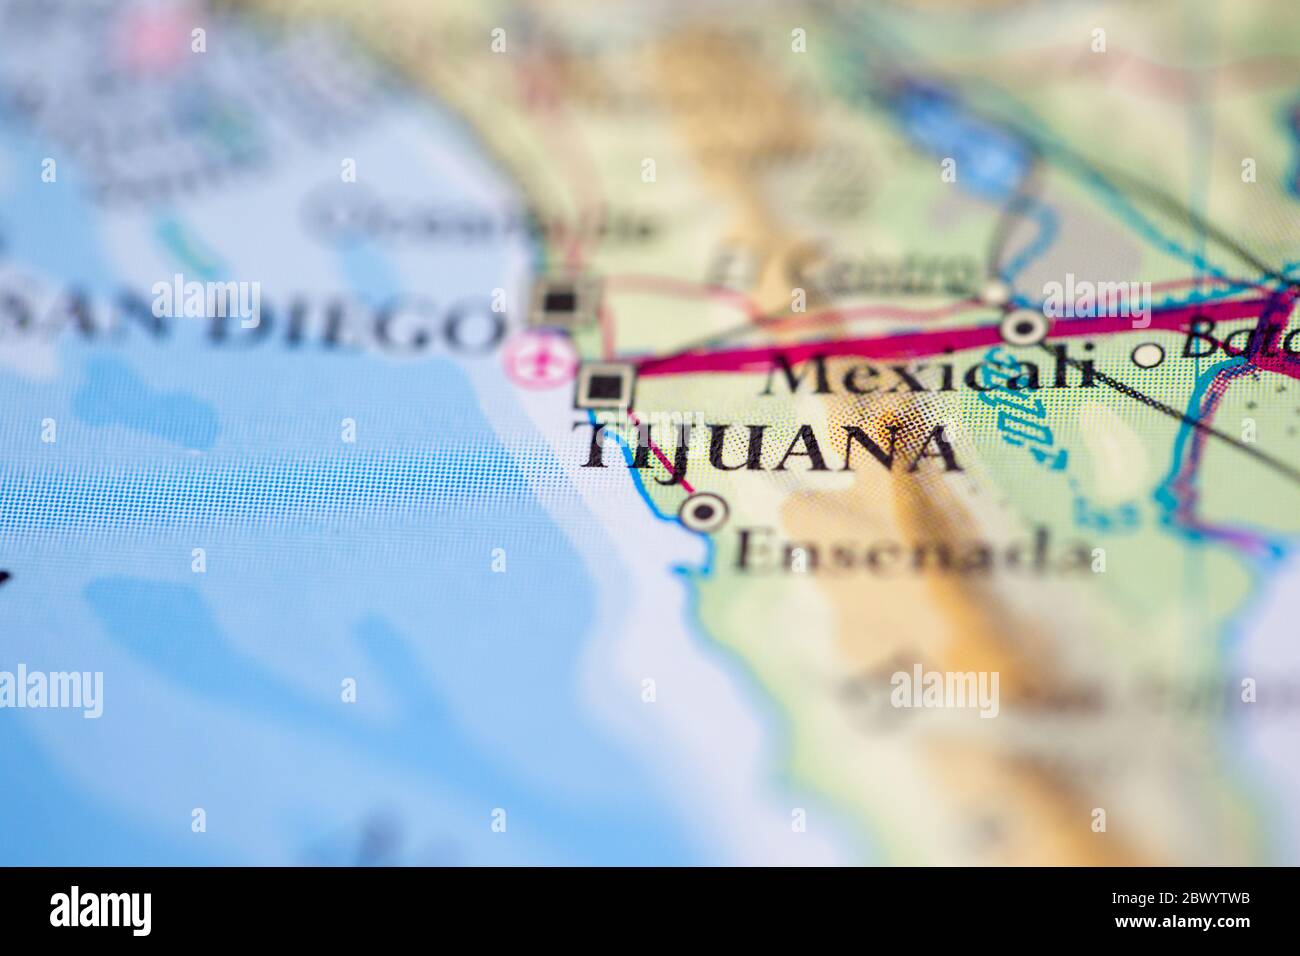 Profondità di campo poco profonda focalizzazione sulla mappa geografica posizione della città di Tijuana Stati Uniti d'America continente americano sull'atlante Foto Stock